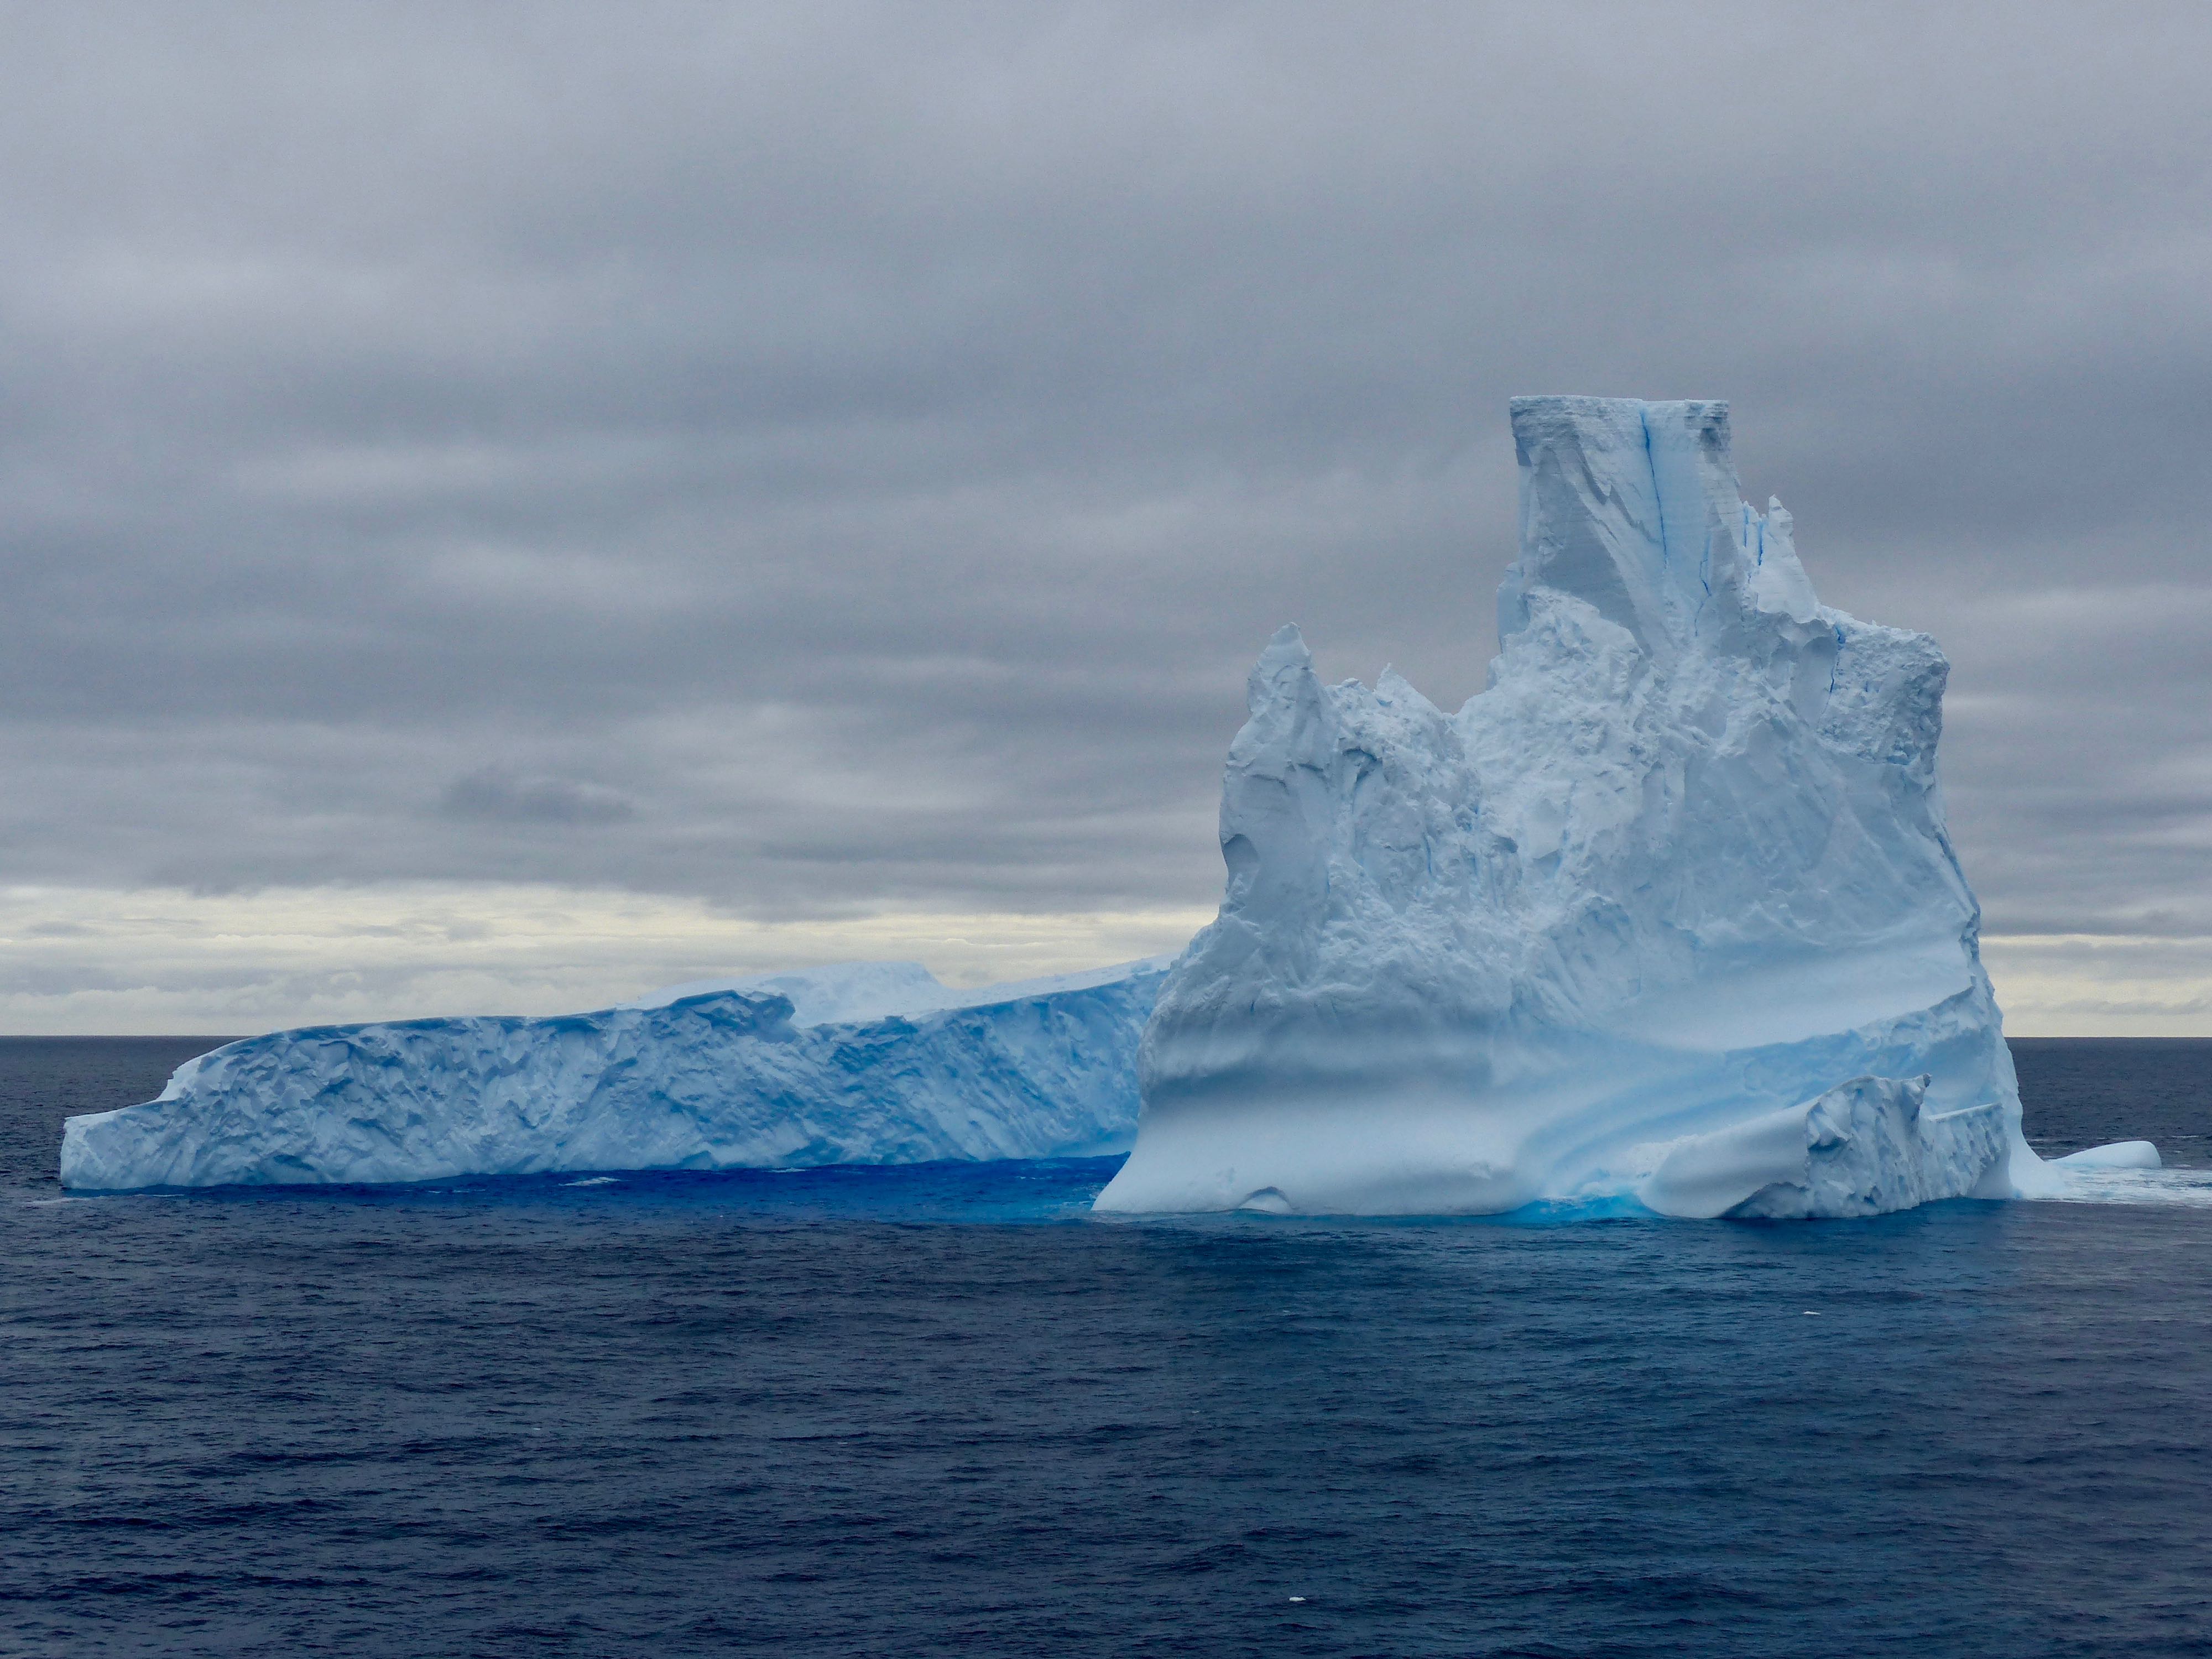 Iceberg seen in Antarctic waters.